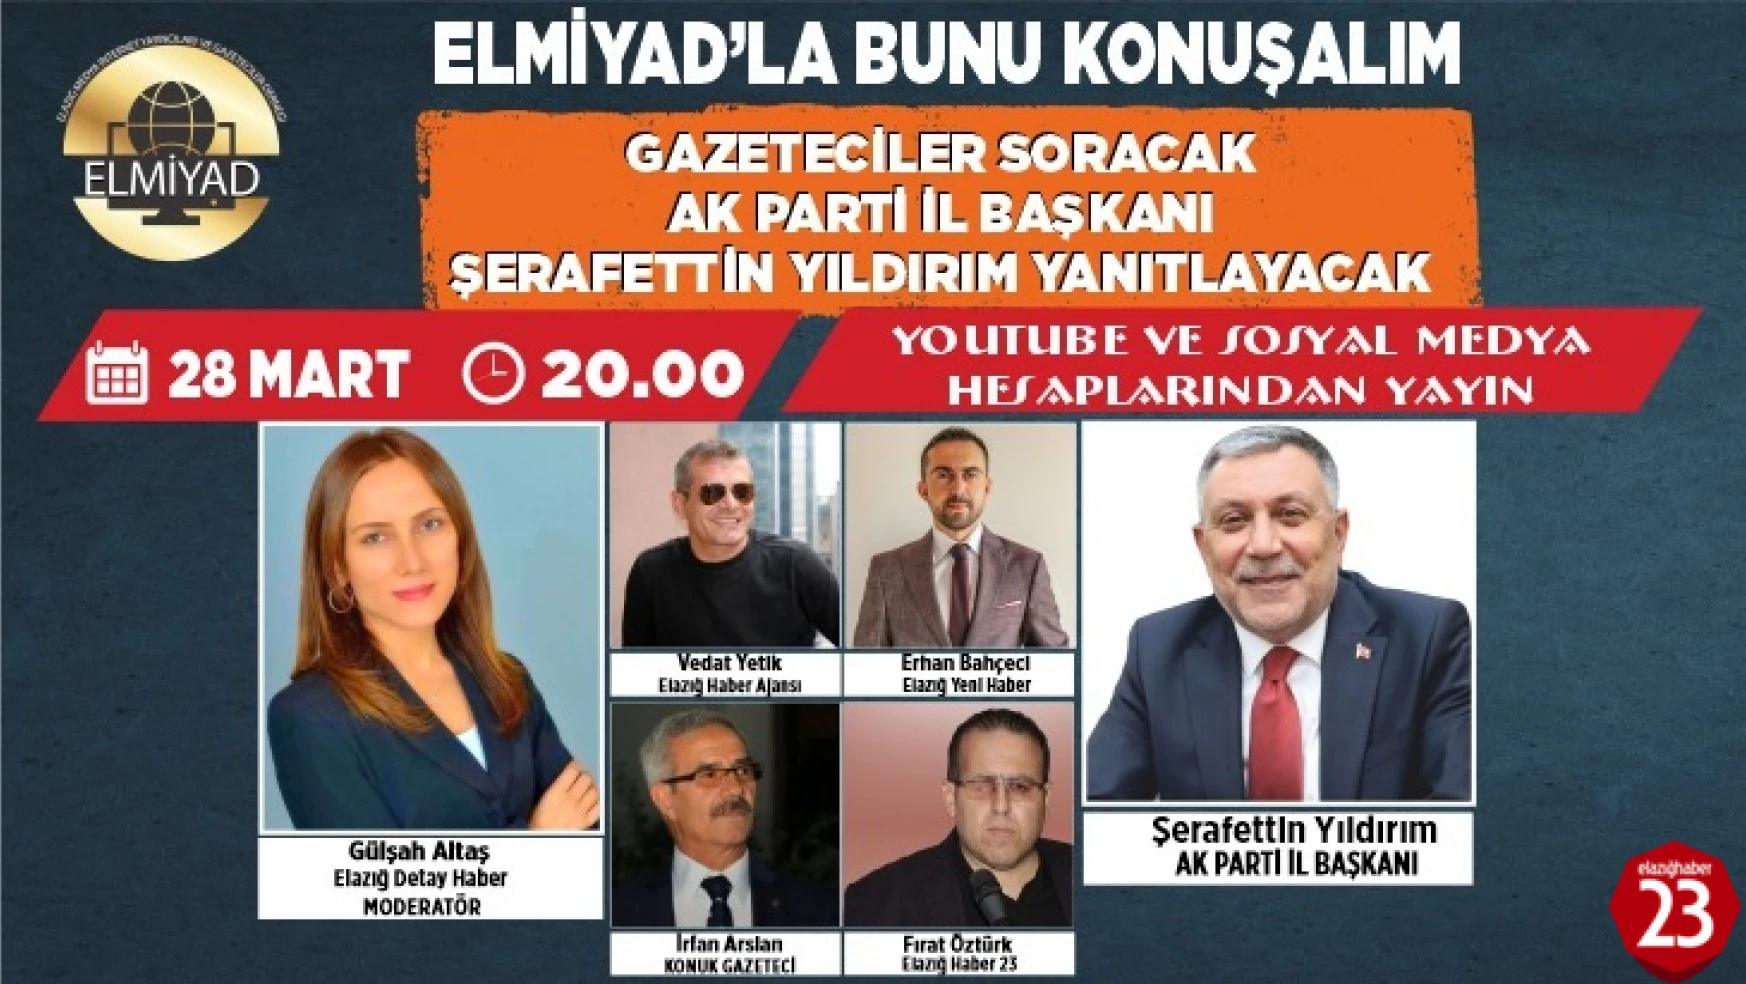 AK Parti Elazığ İl Başkanı Şerafettin Yıldırım, ELMİYAD'ın Konuğu Olacak